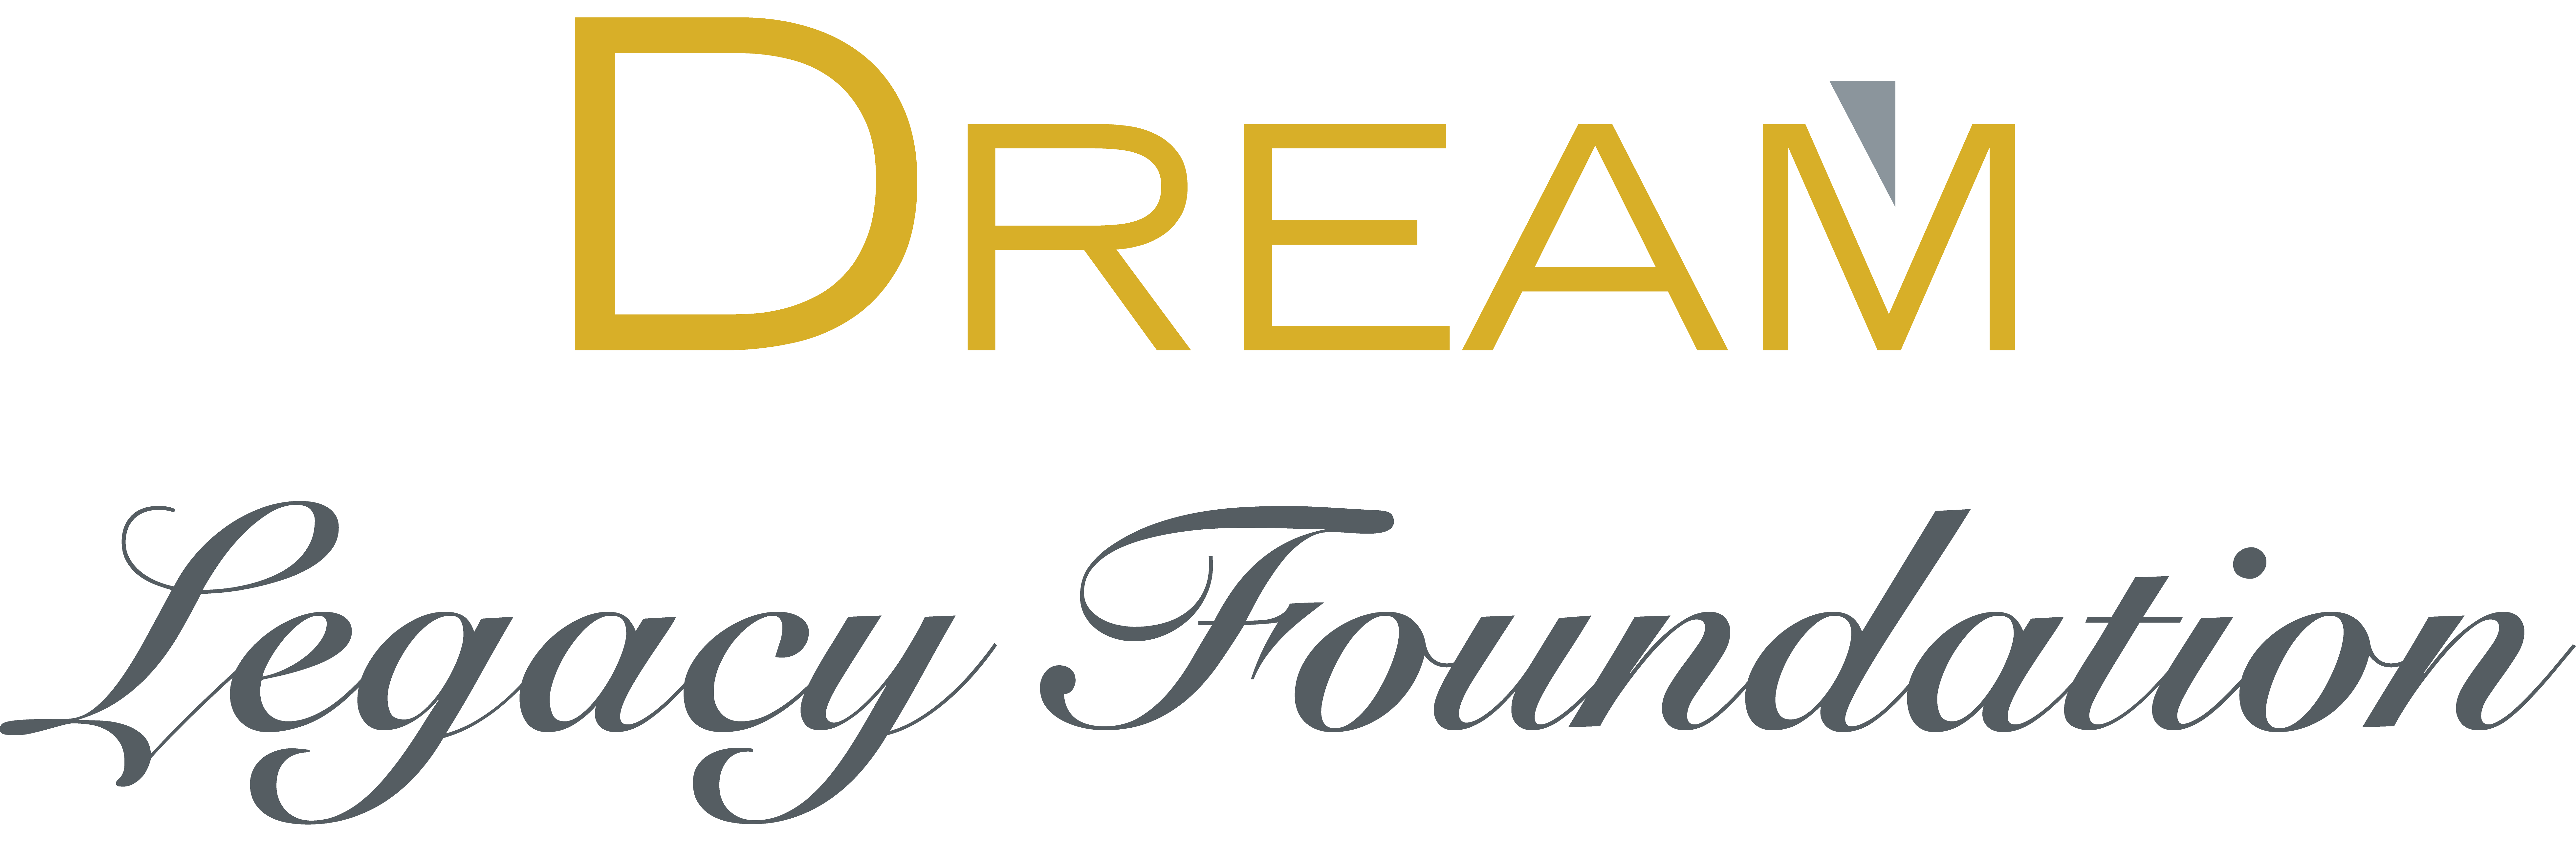 Dream Legacy Foundation Logo